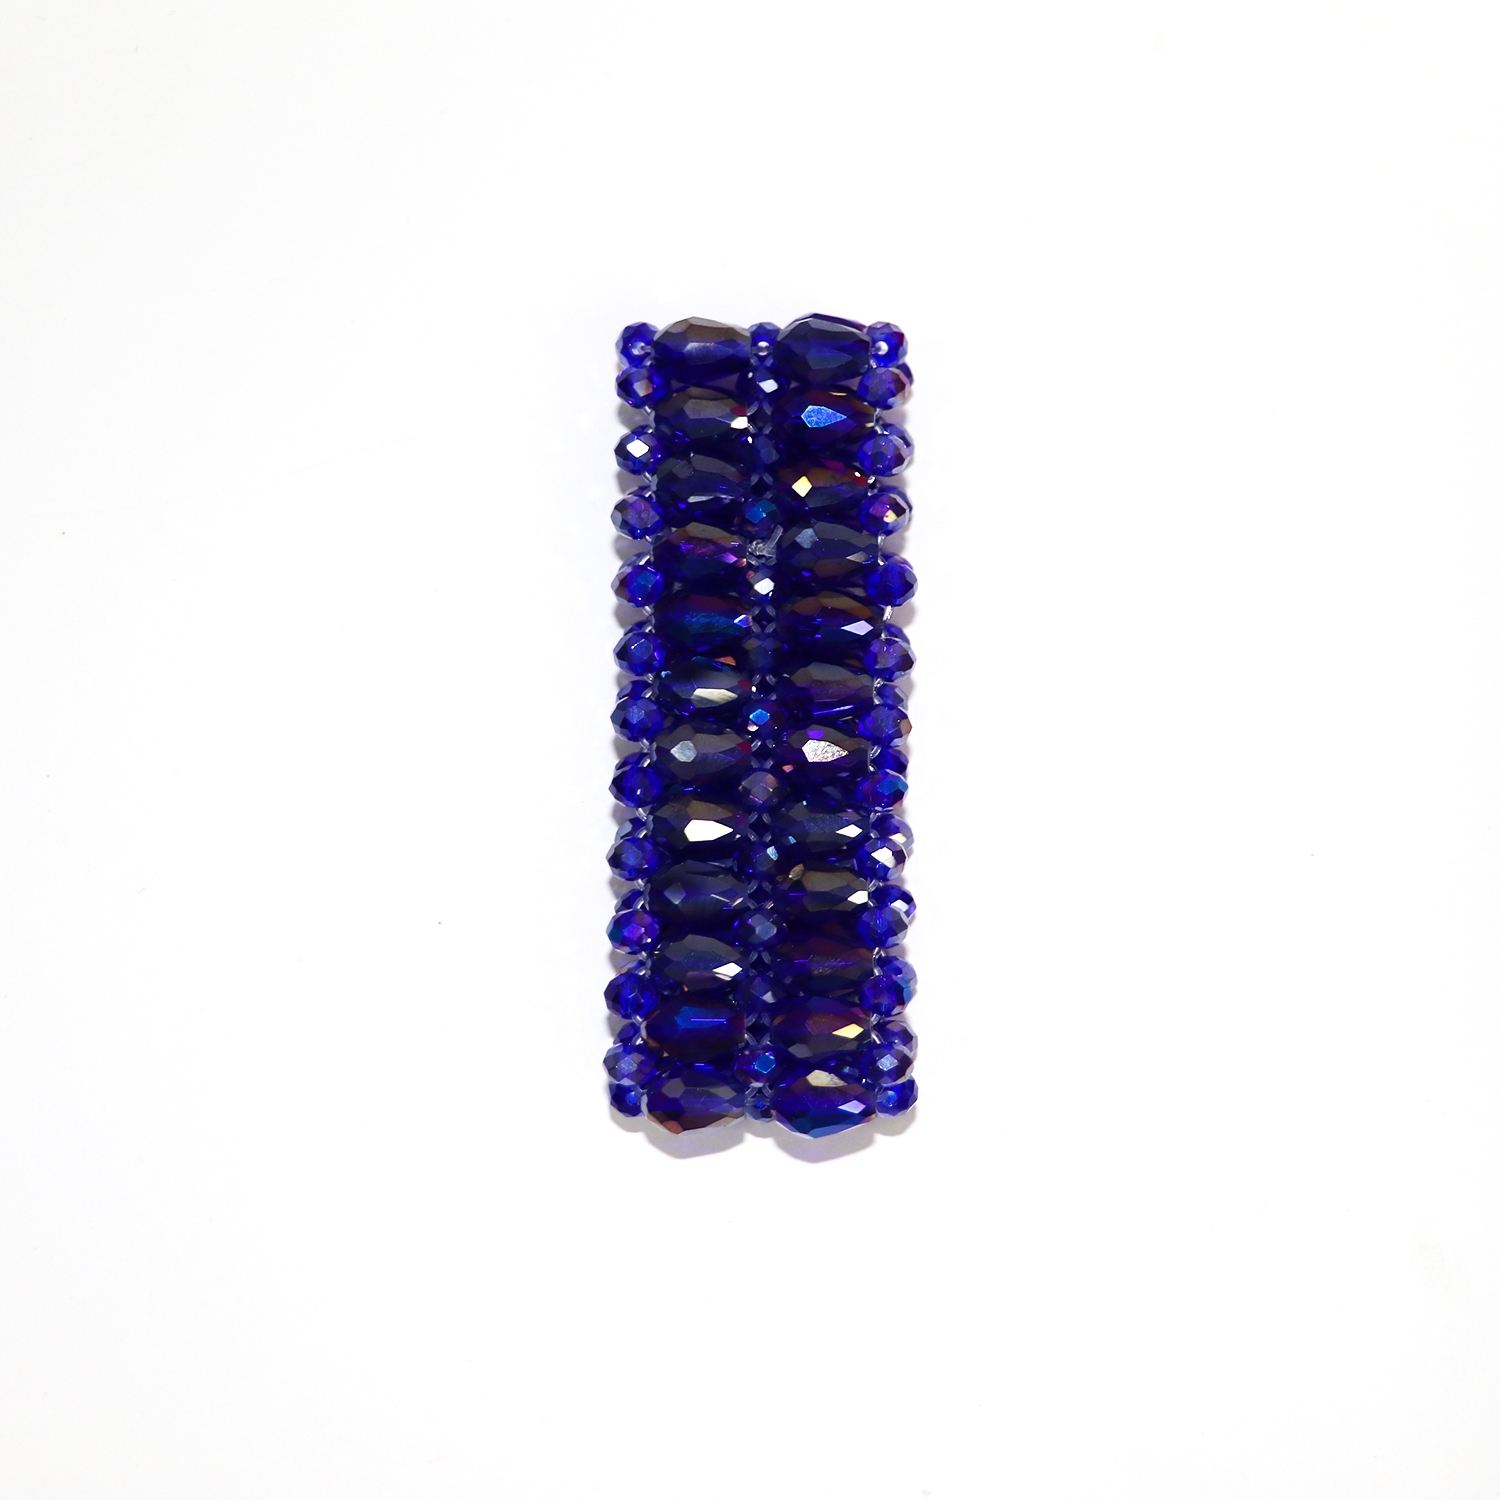 EMM | EMM's stylish adjustable blue bracelet